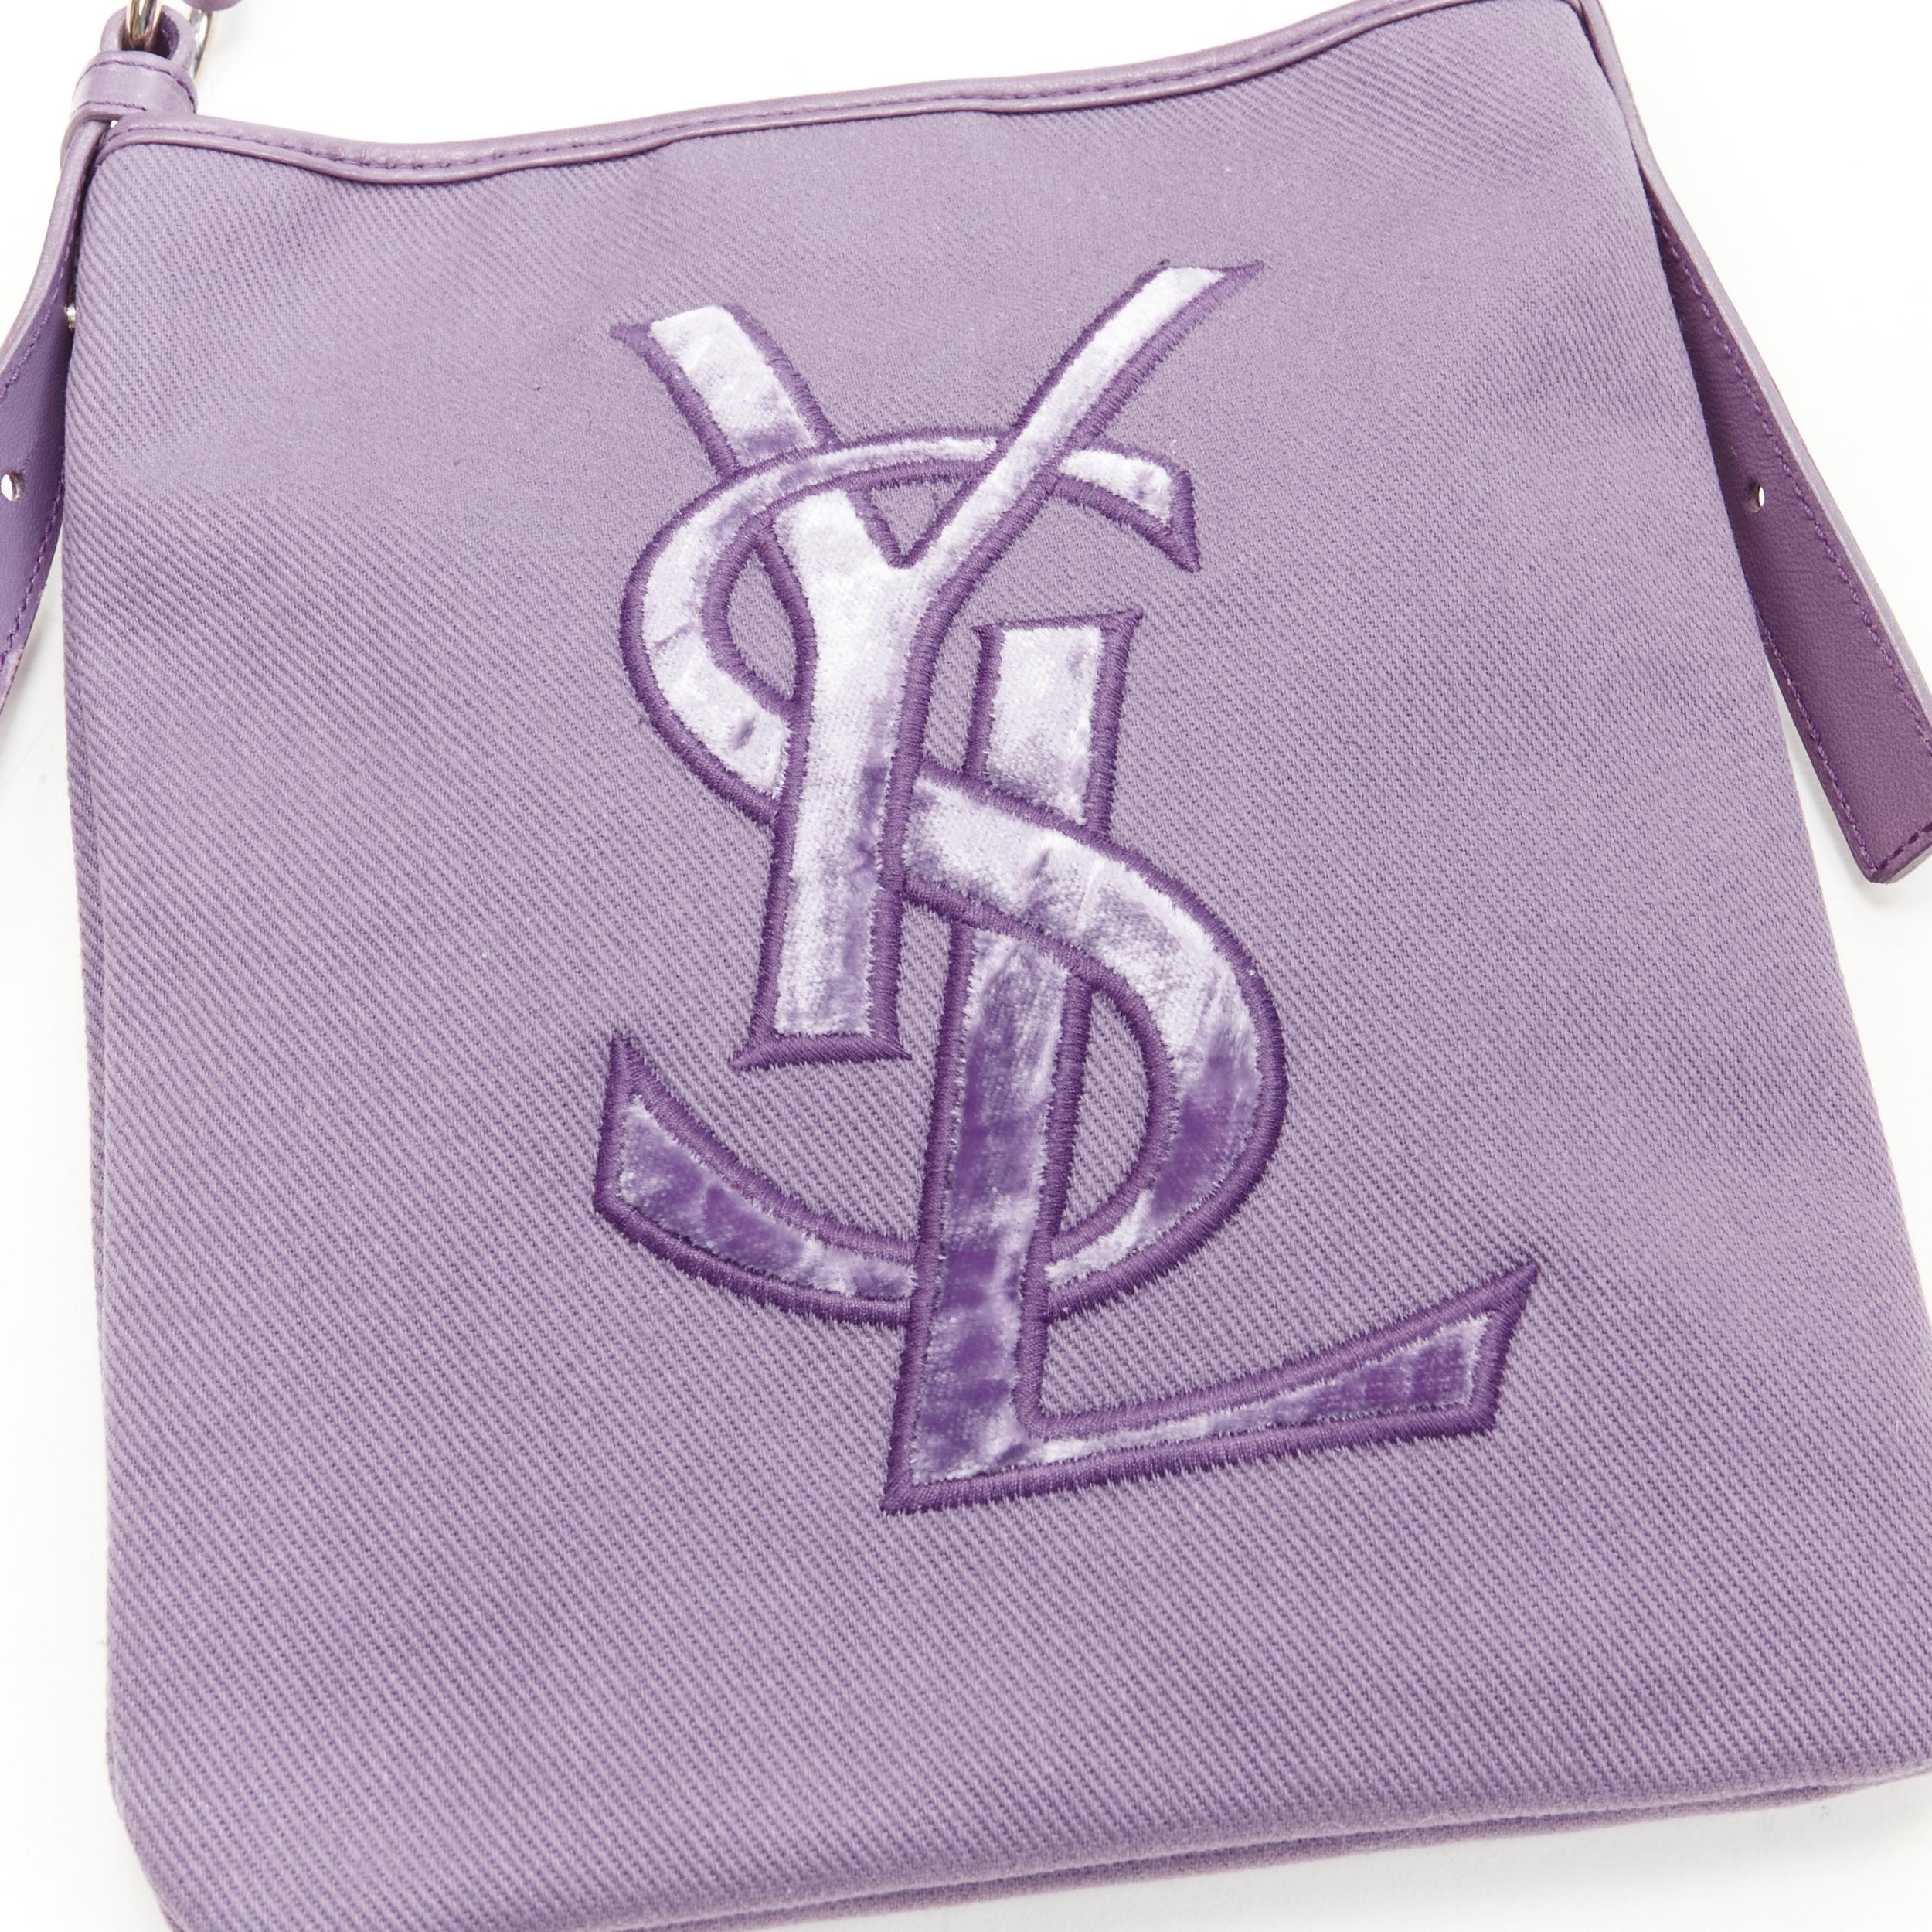 YVES SAINT LAURENT YSL purple velvet logo canvas leather crossbody strap bag 1